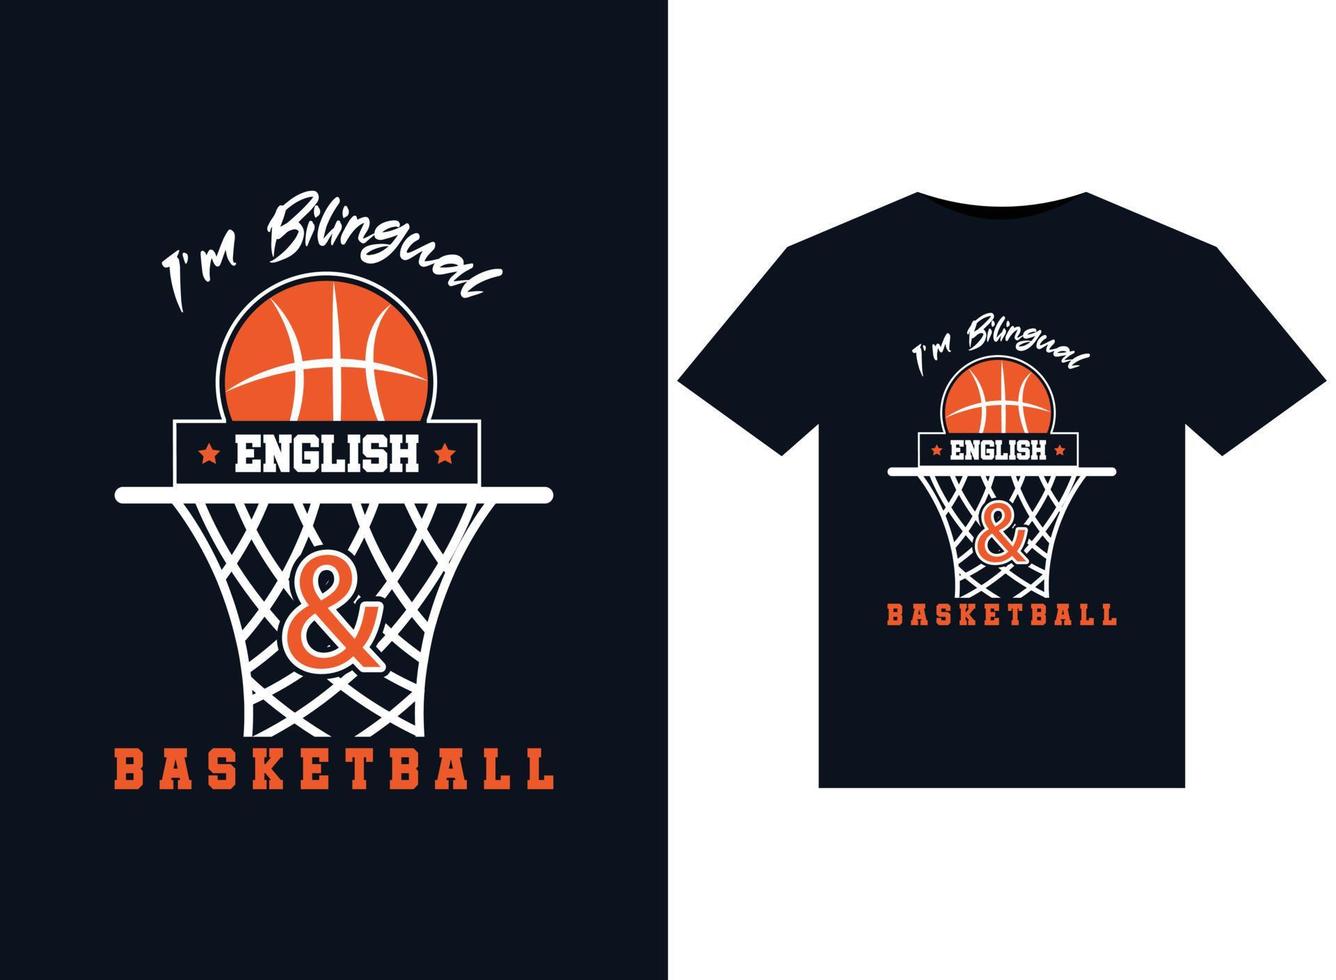 jag är tvåspråkig engelsk och basketboll illustrationer för de tryckfärdig t-tröjor design vektor